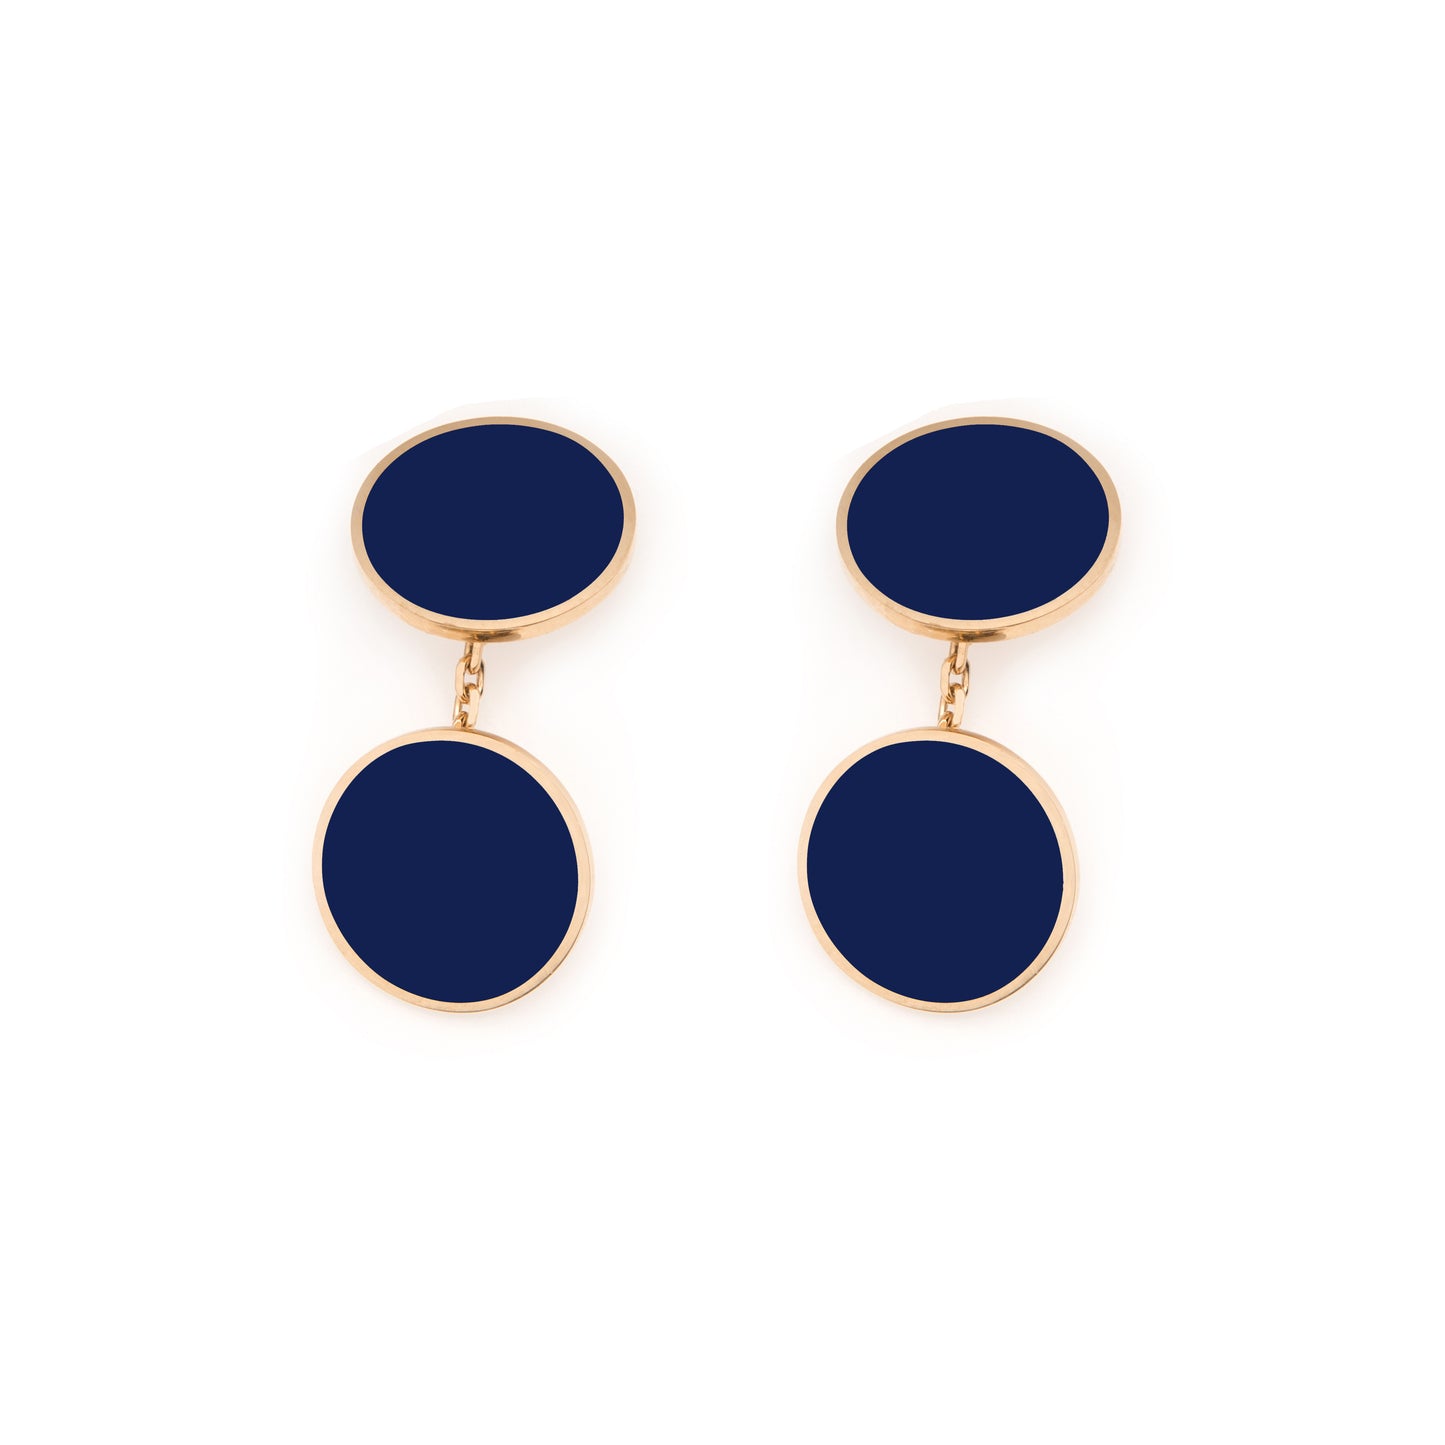 MORA bijoux boutons de manchette ronds en or 18 carats  émaillés bleu marine, montés sur une chaînette forçat. Disponibles dans d'autres couleurs.